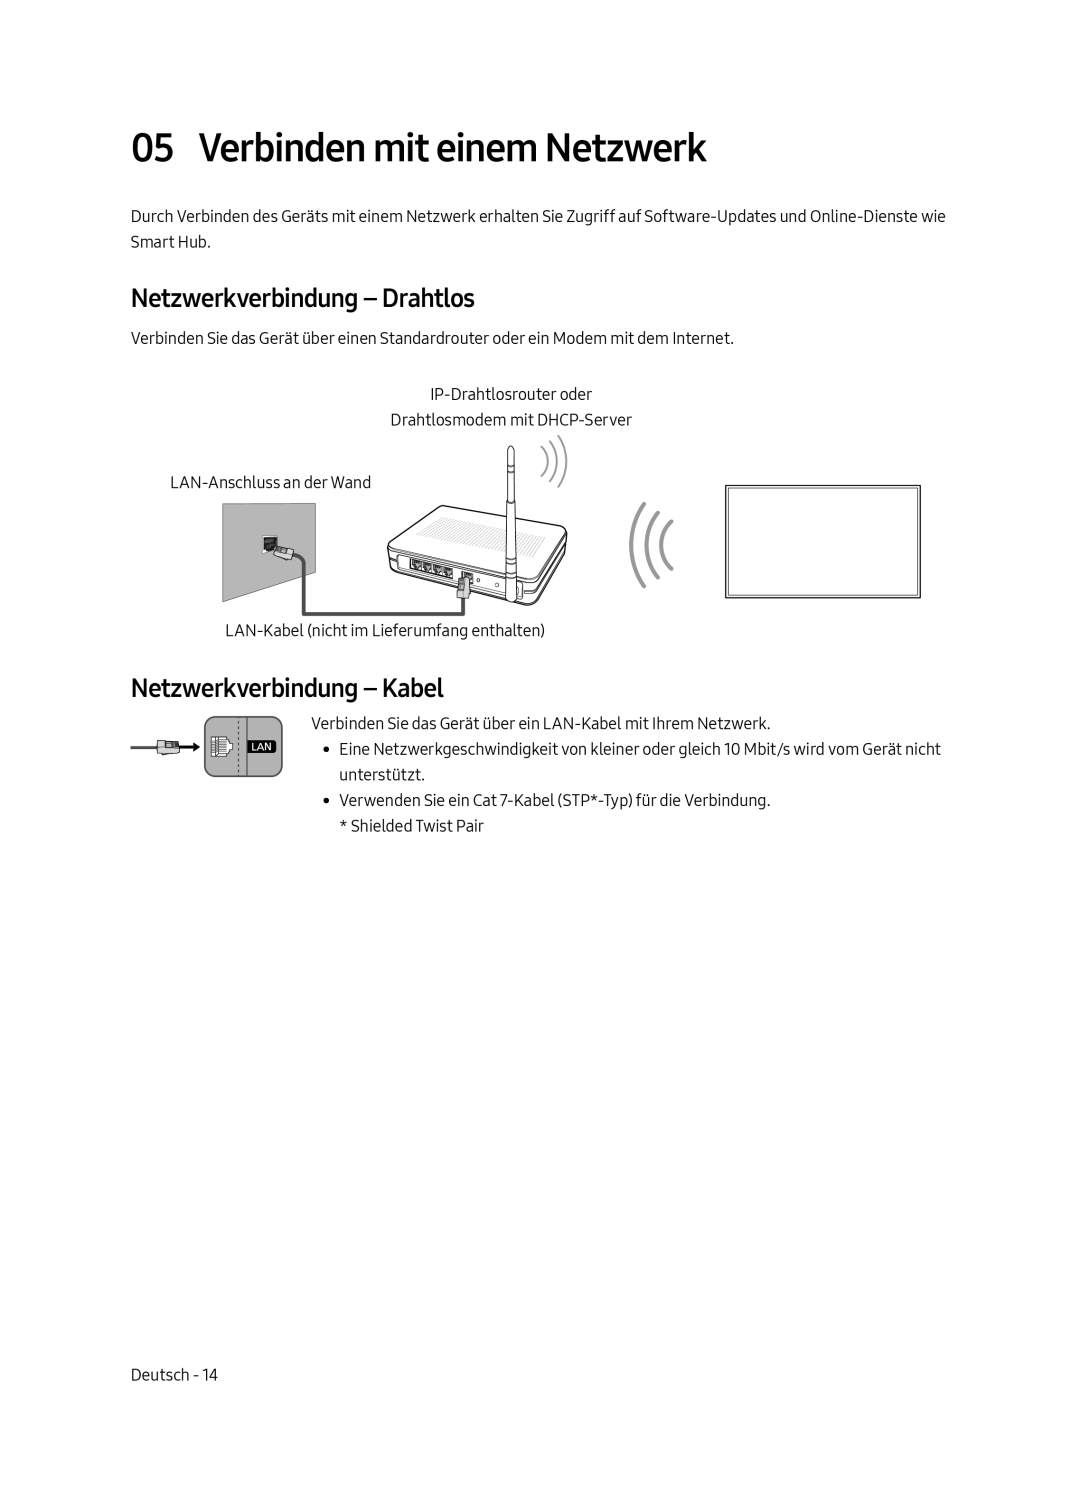 Samsung UE65MU7070LXXN manual Verbinden mit einem Netzwerk, Netzwerkverbindung - Drahtlos, Netzwerkverbindung - Kabel 